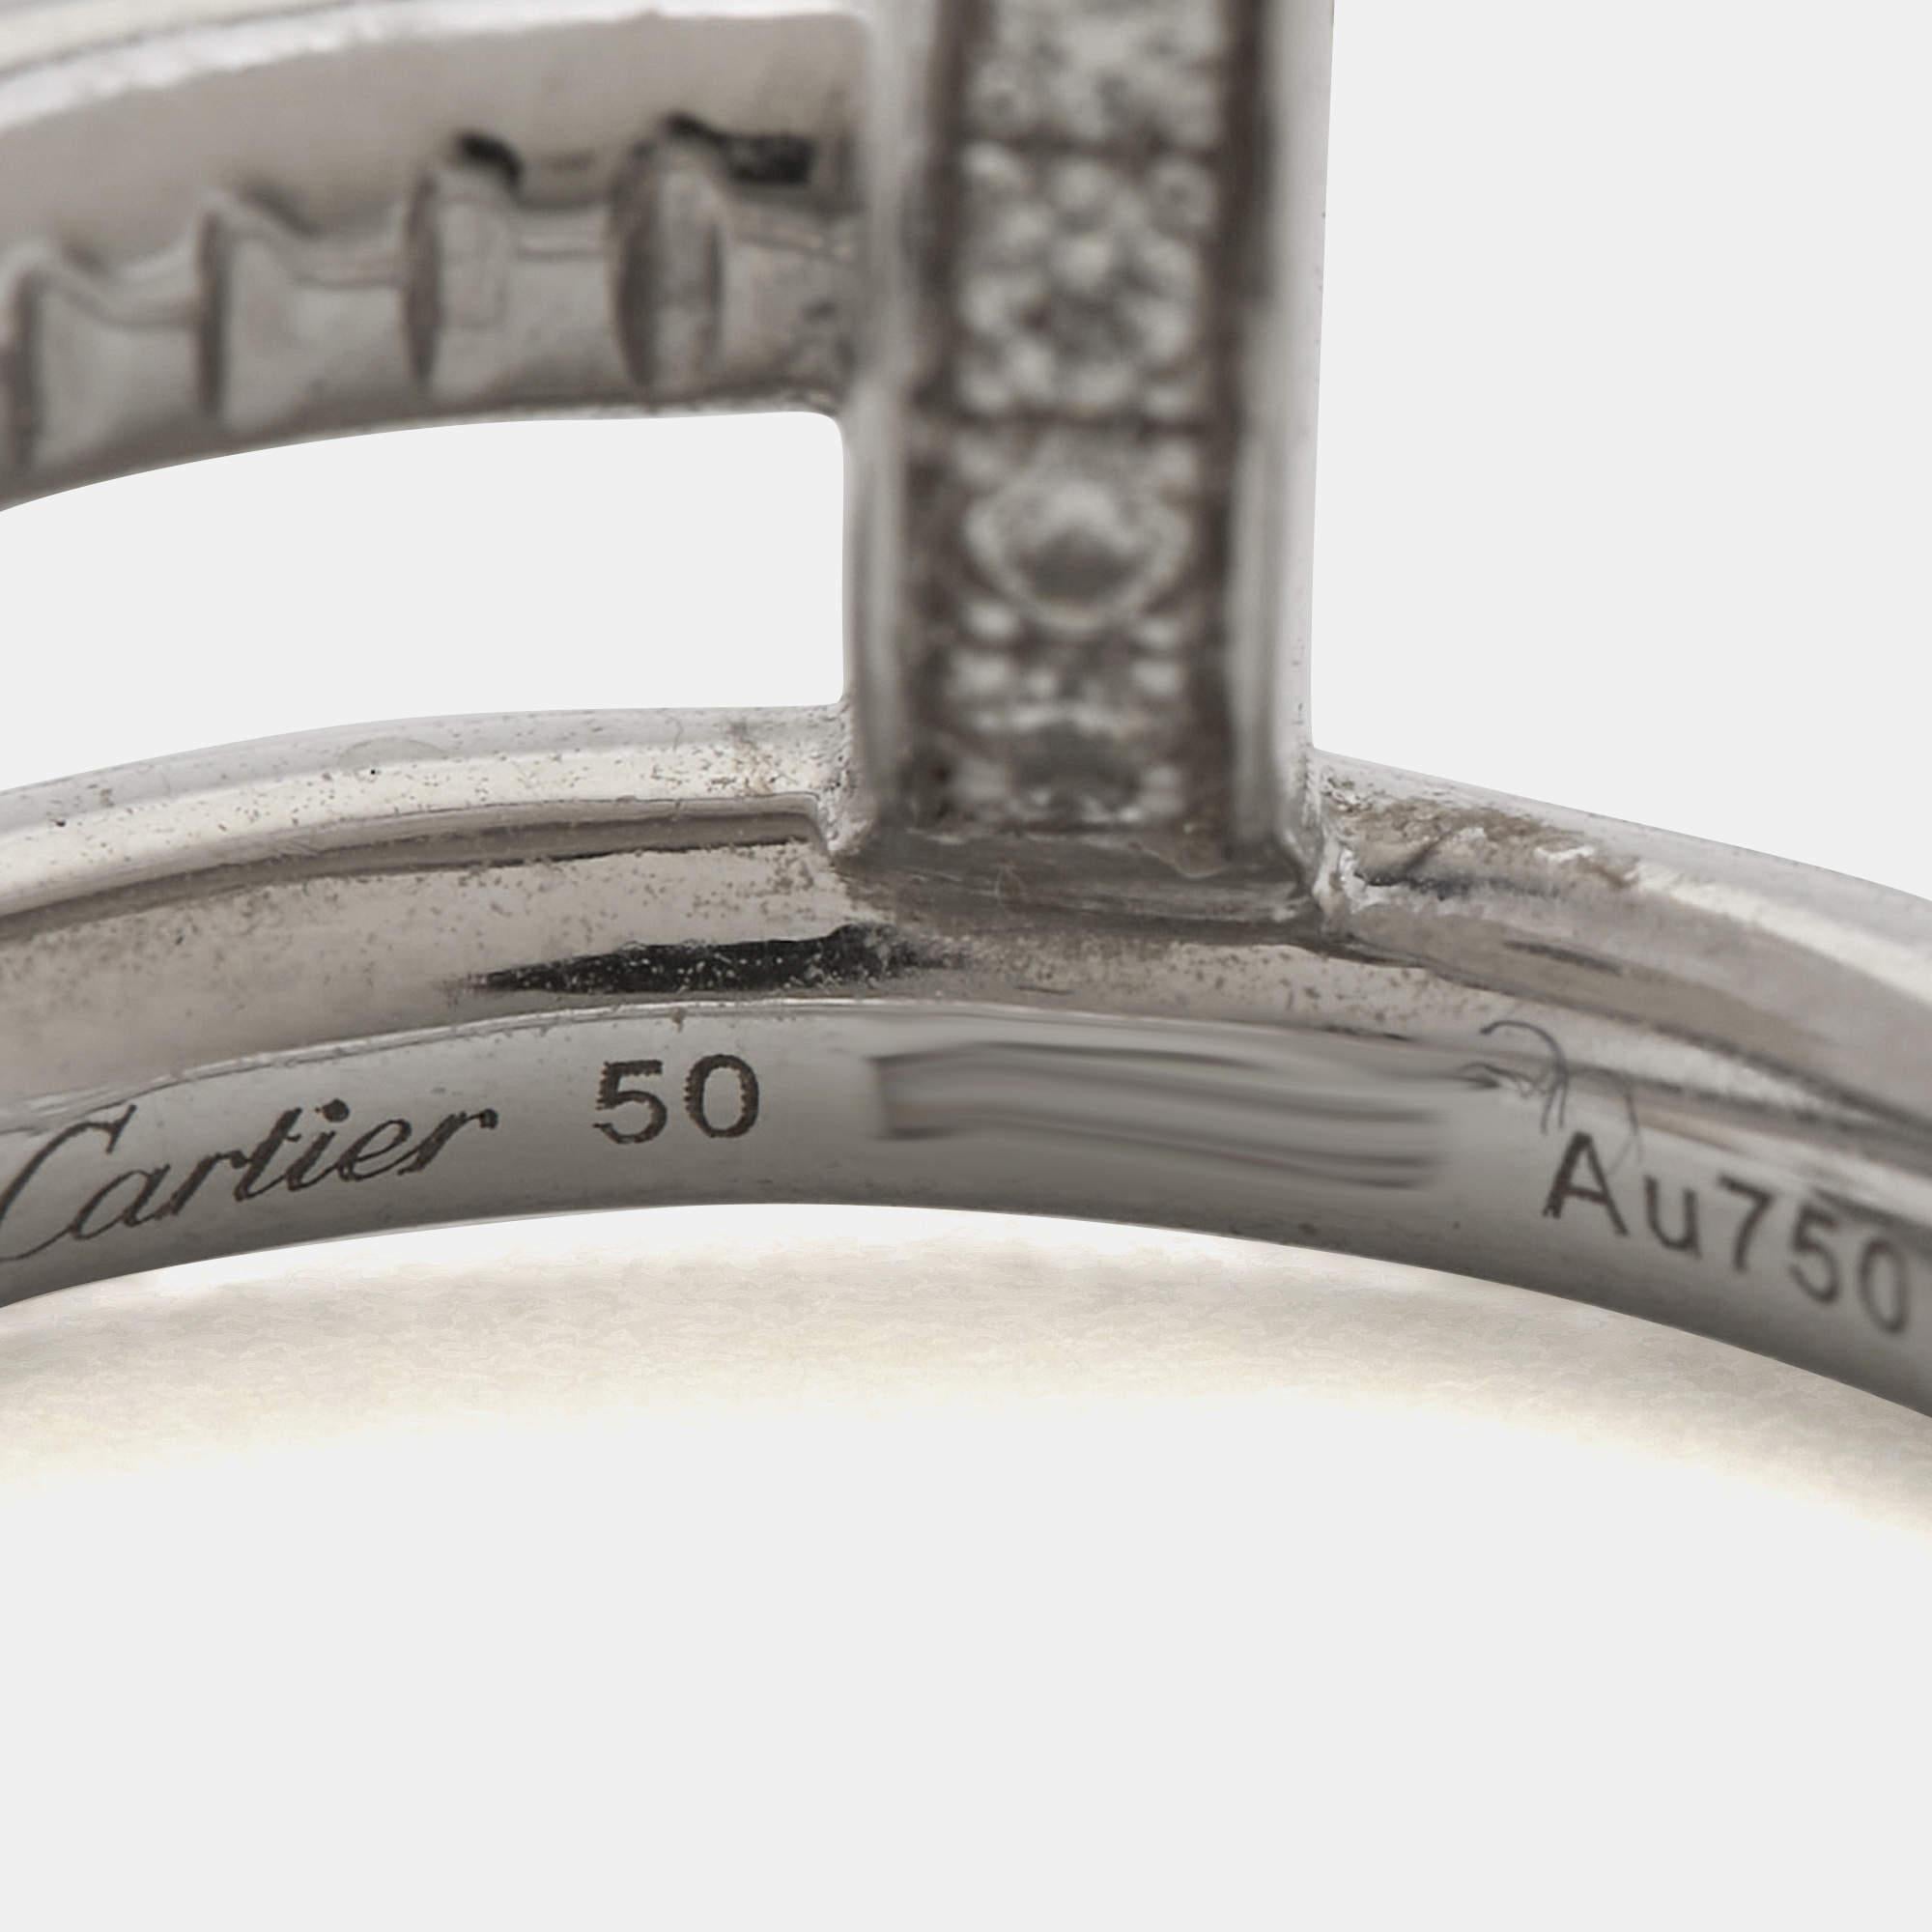 Bei der Kollektion Juste un Clou von Cartier geht es darum, gewöhnliche Gegenstände in exquisite Schmuckstücke zu verwandeln. Wir sehen die Idee in diesem authentischen Ring Juste un Clou wunderschön umgesetzt. Es ist eine Kreation, die mit Stolz